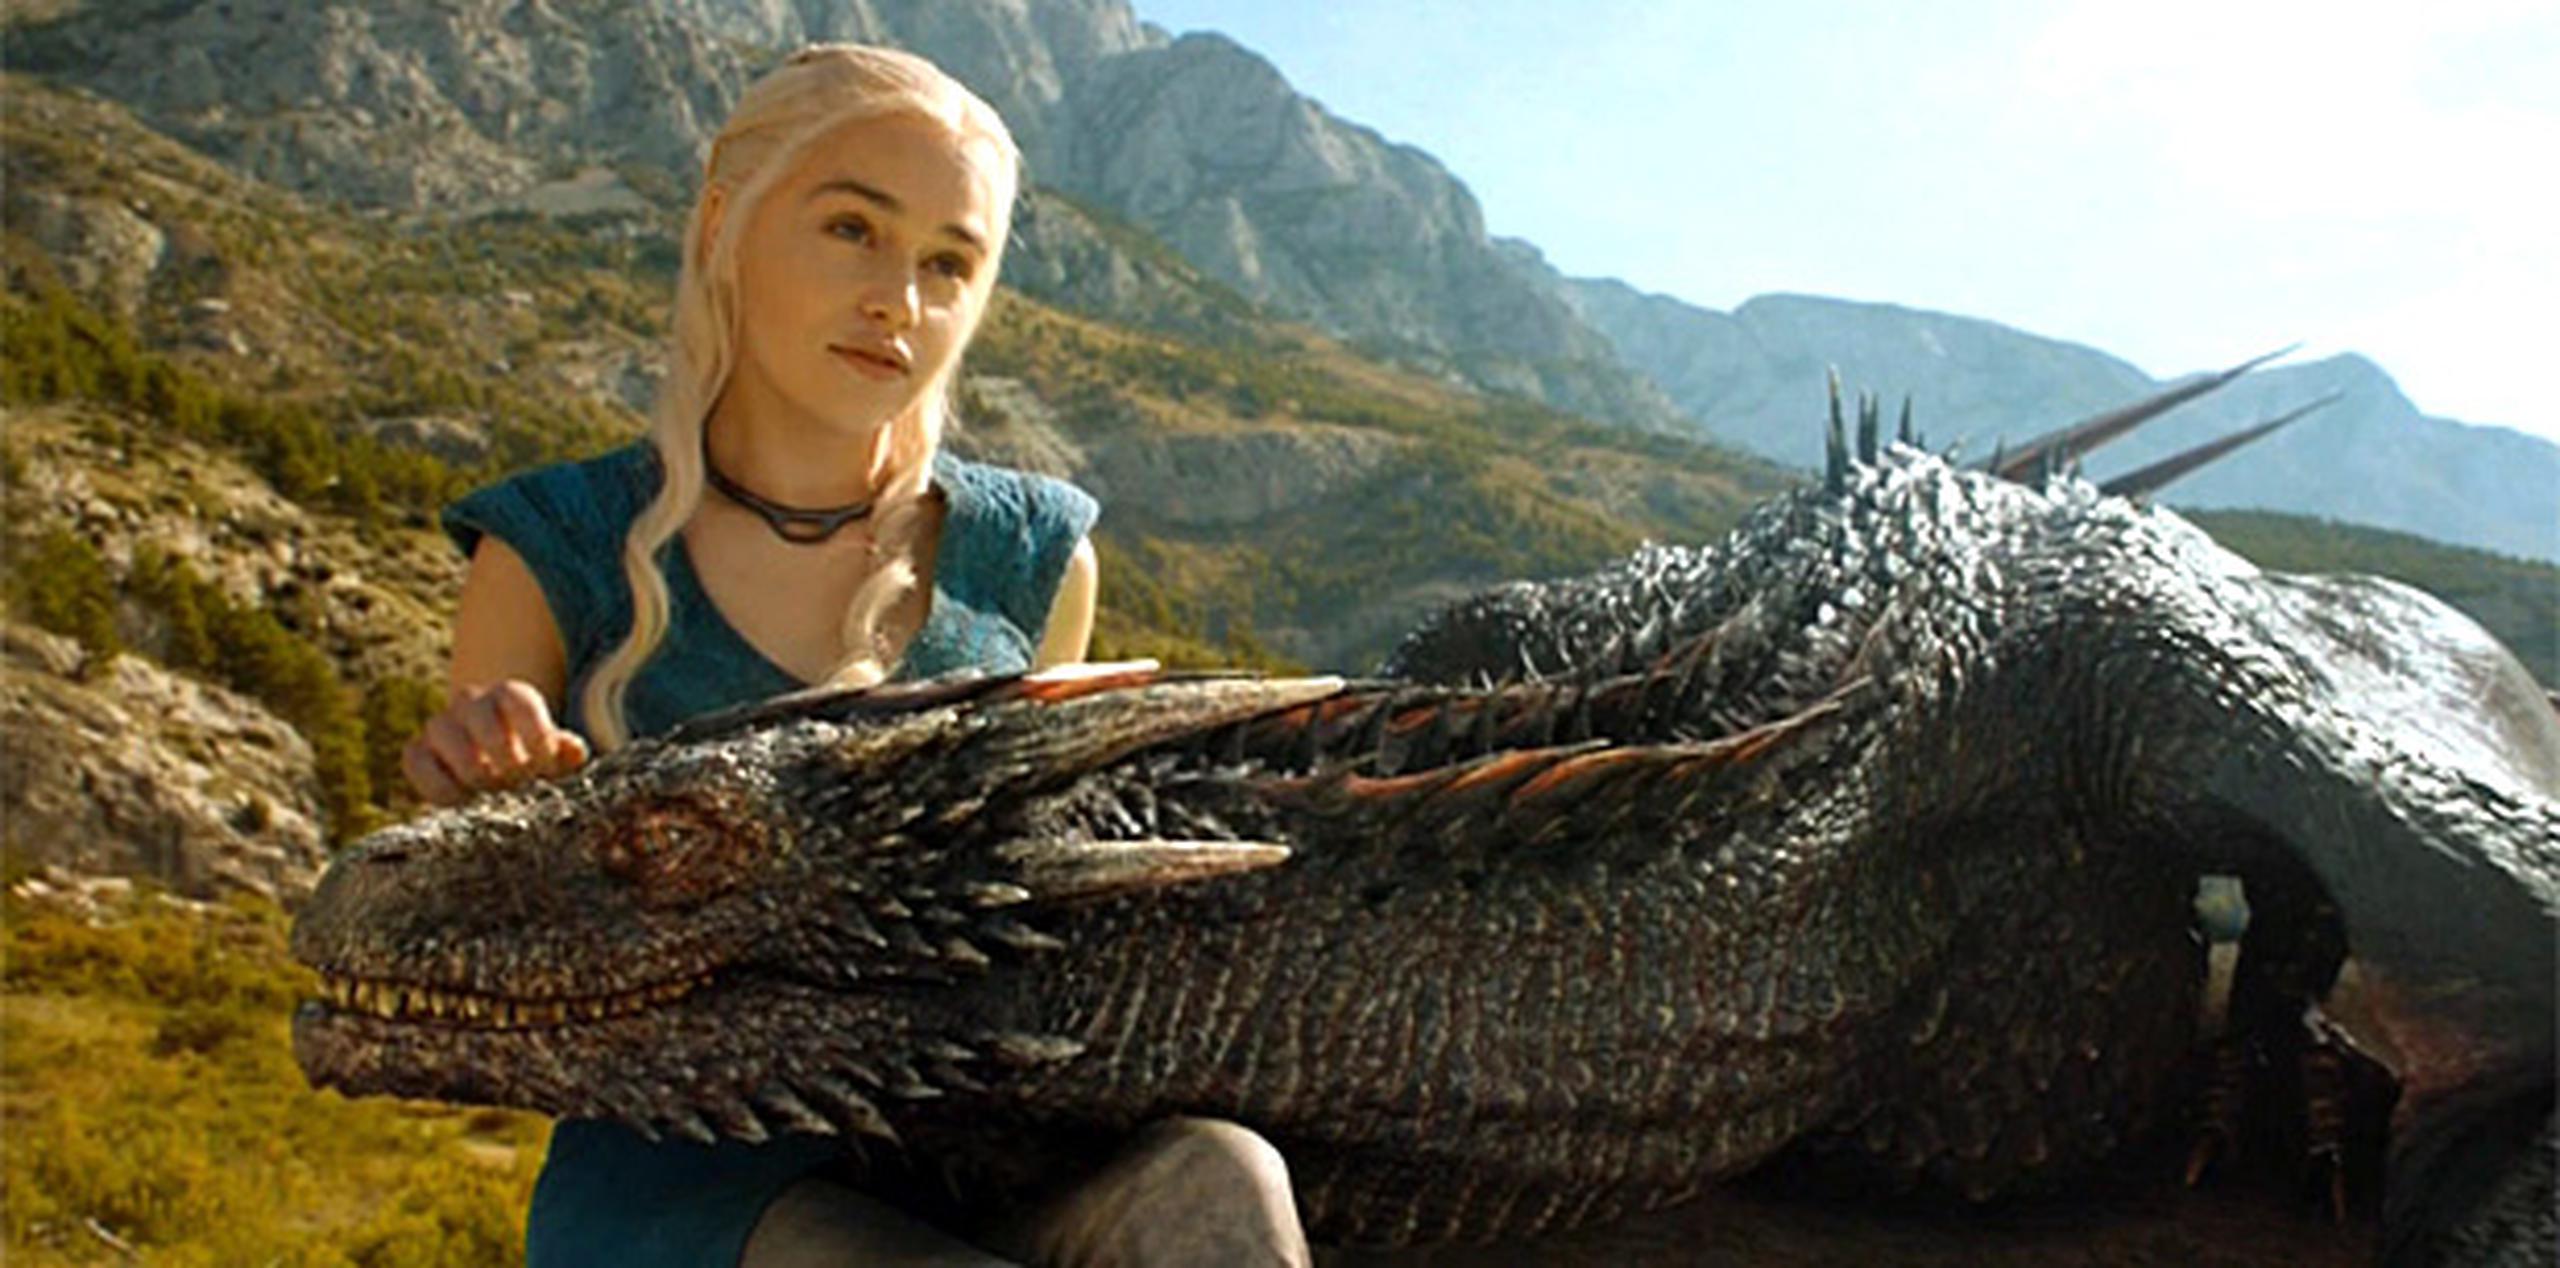 Emilia Clarke interpreta a "Daenerys Targaryen" en la serie "Game of Thrones".